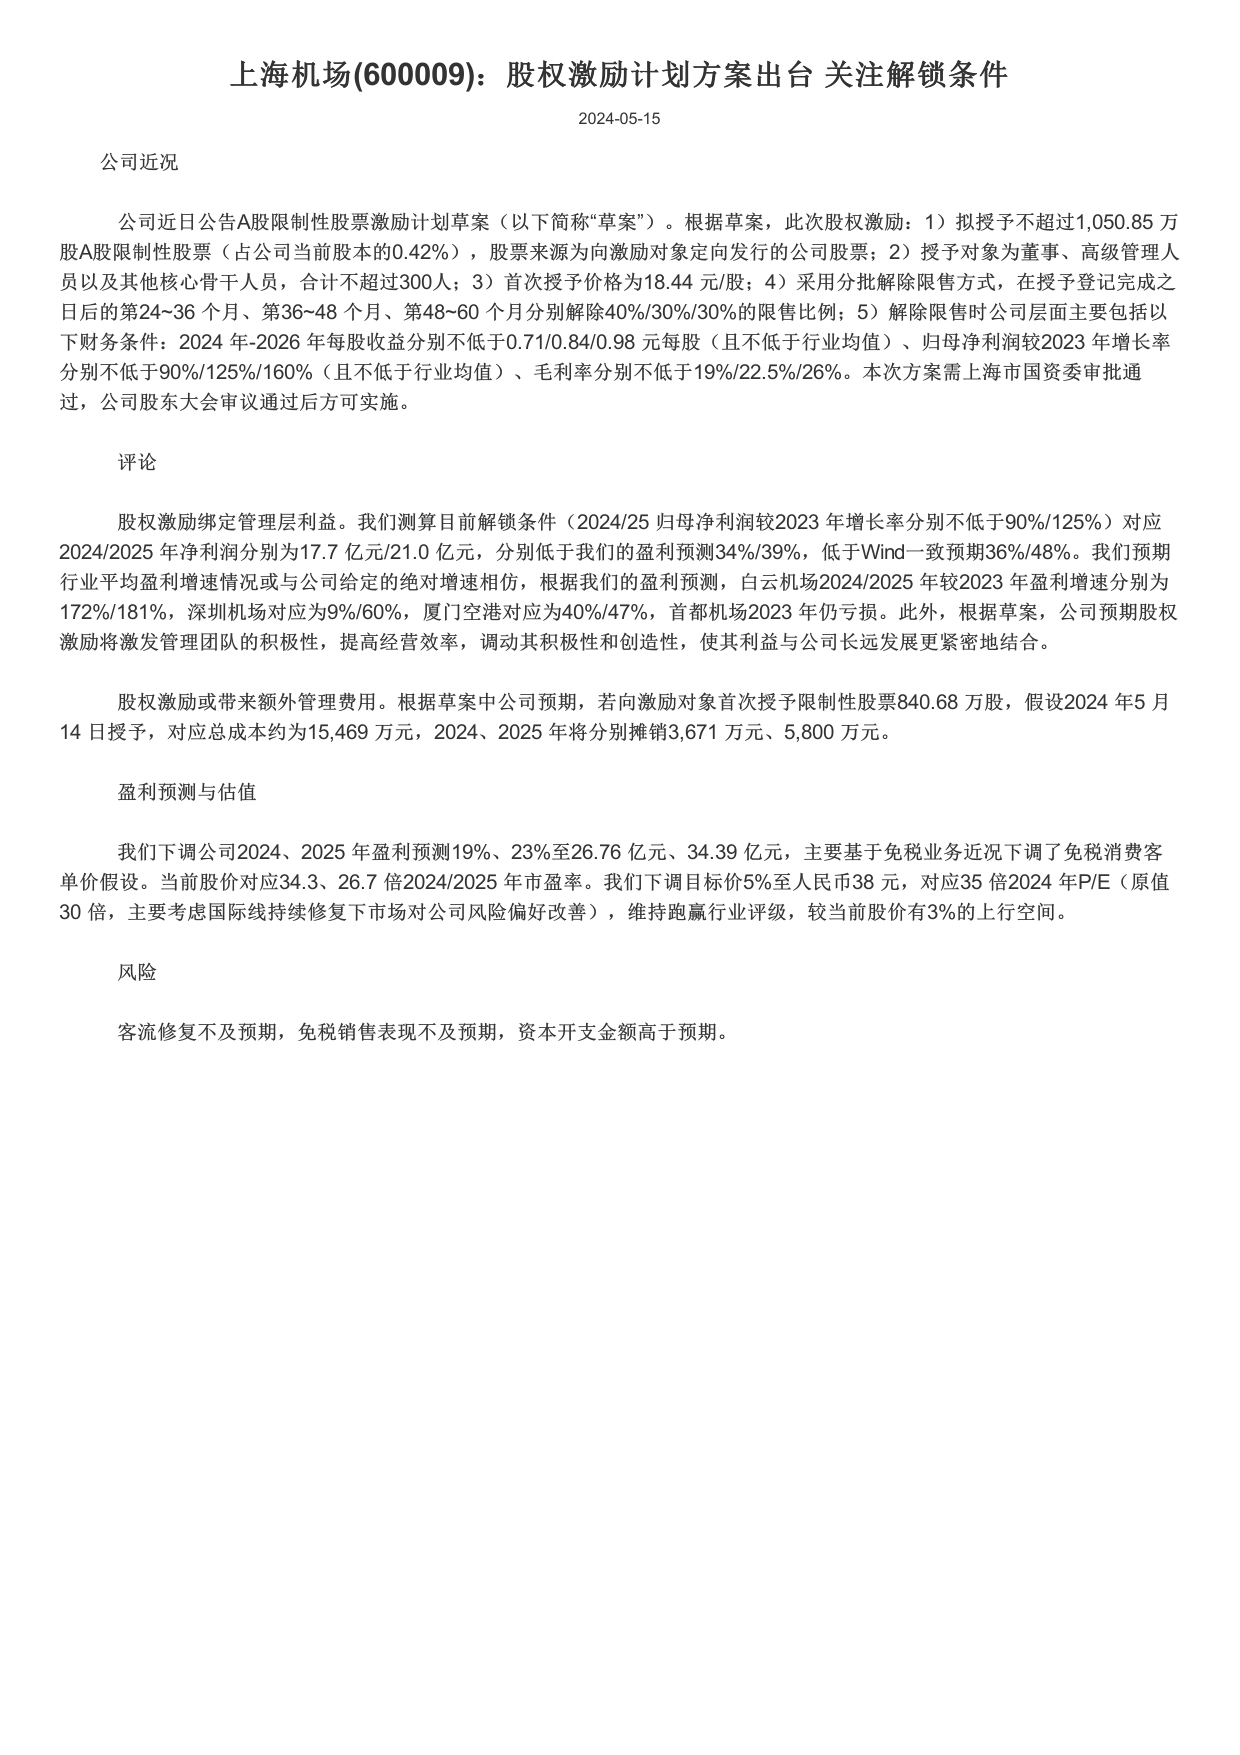 上海机场(600009)股权激励计划方案出台，关注解锁条件.pdf